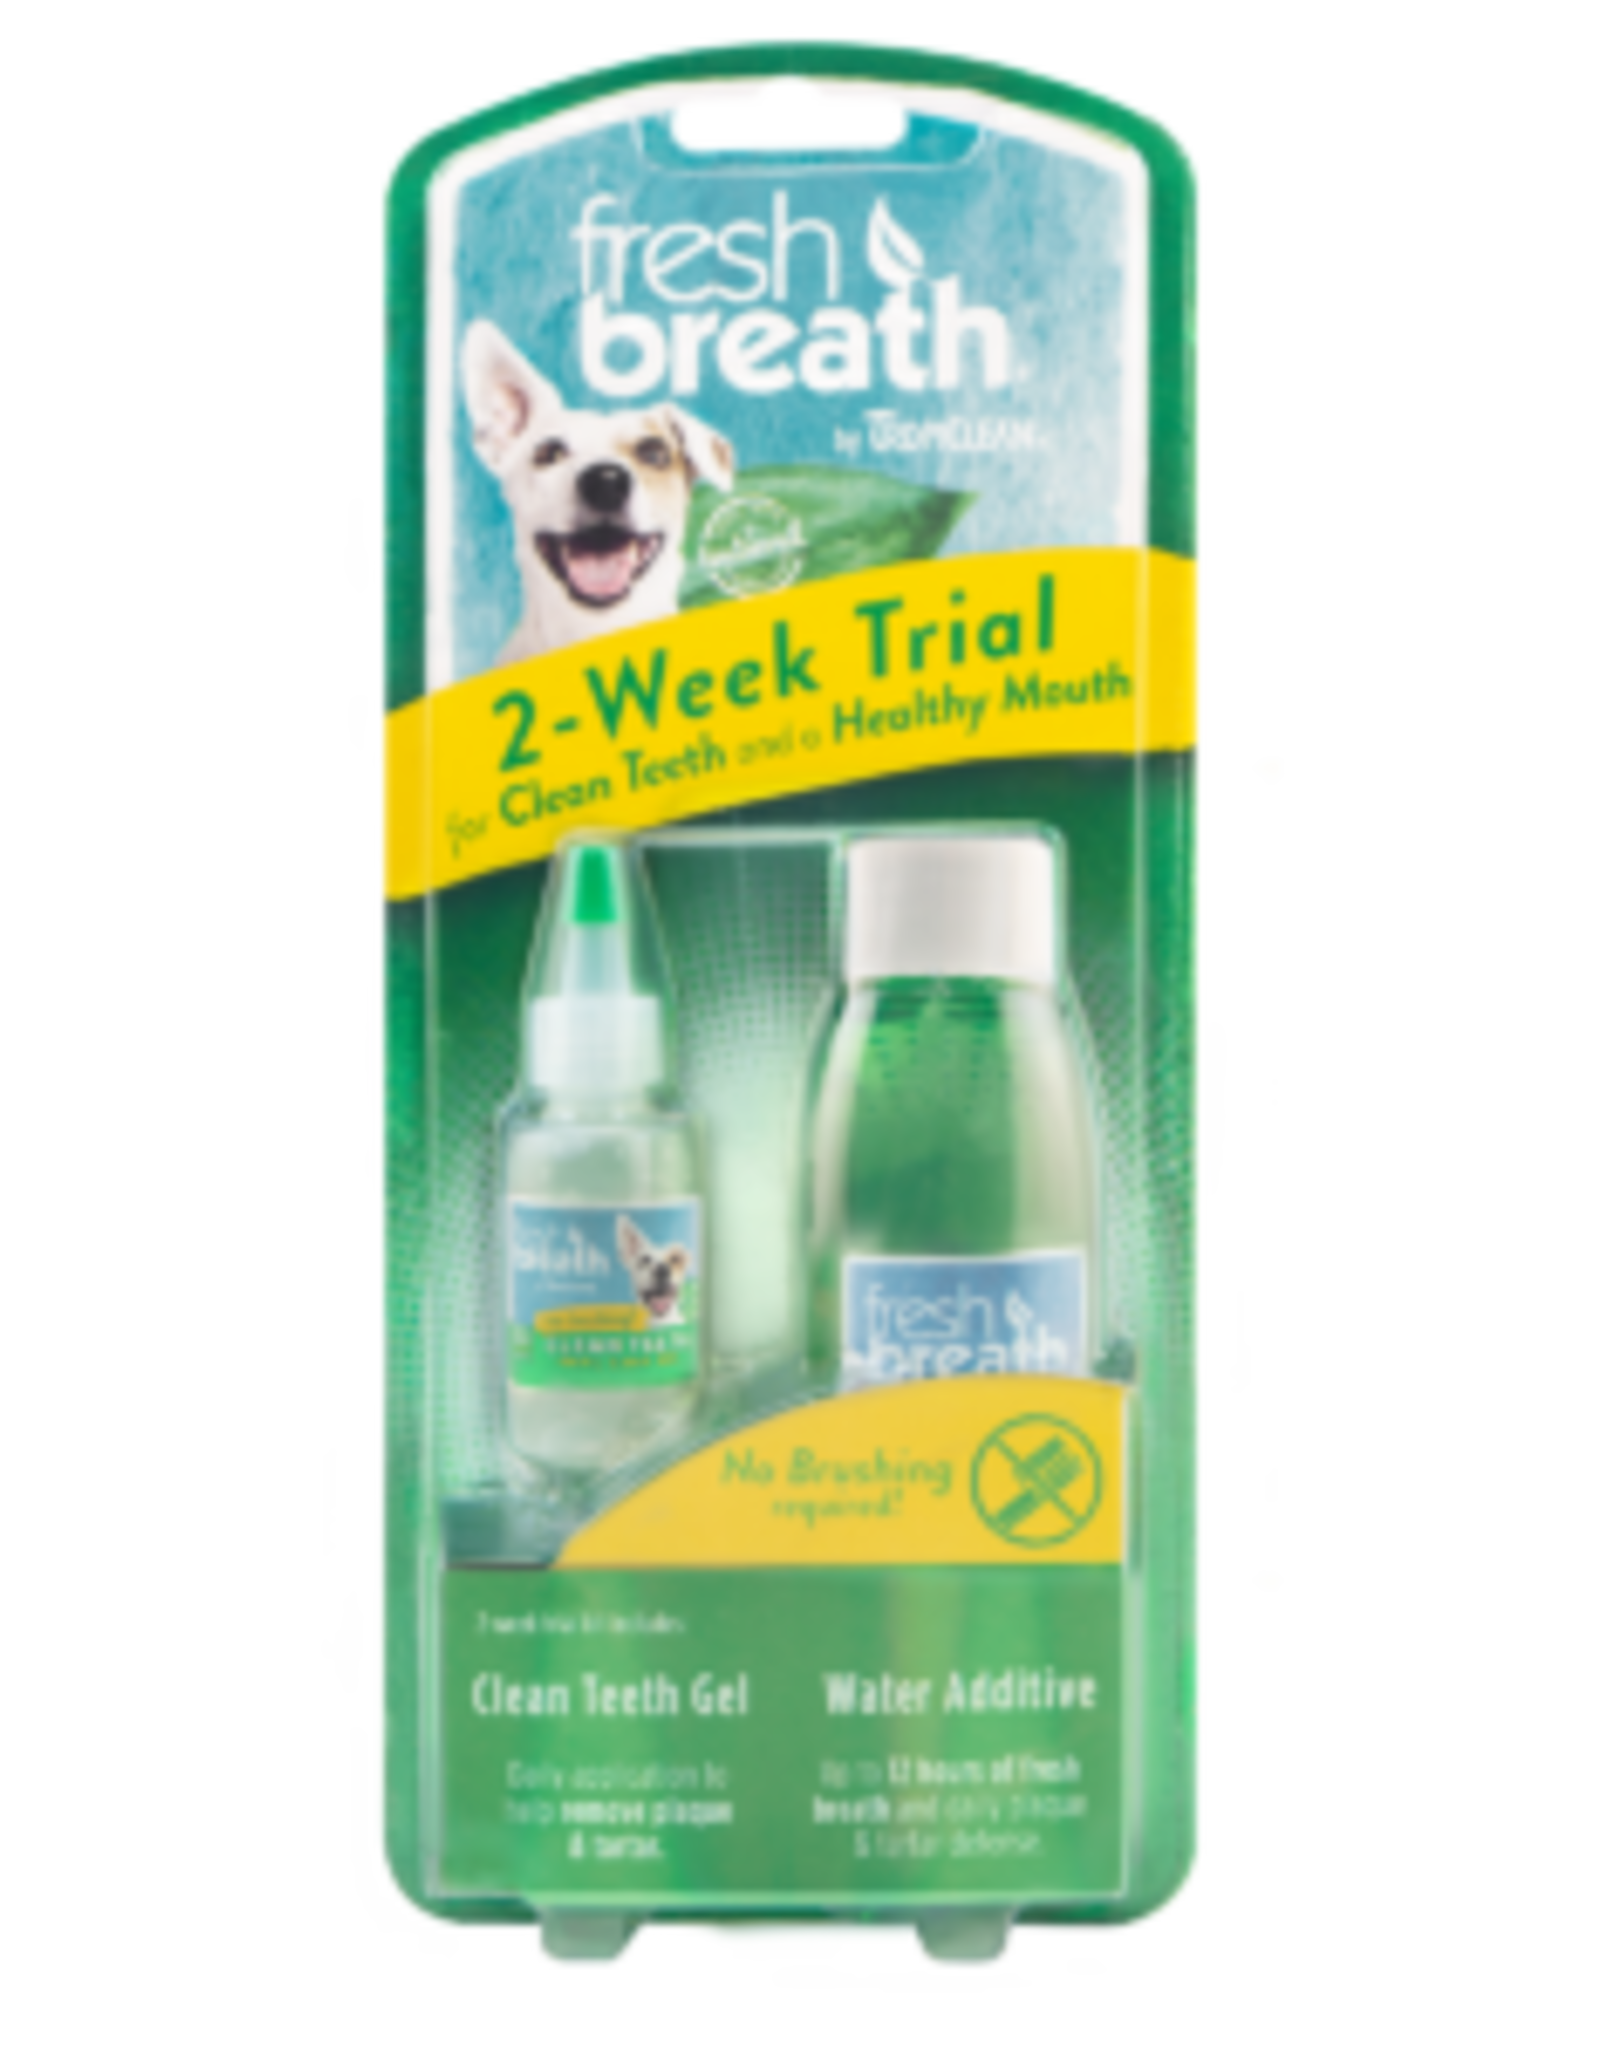 TropiClean Fresh Breath 2-Week Trial kit